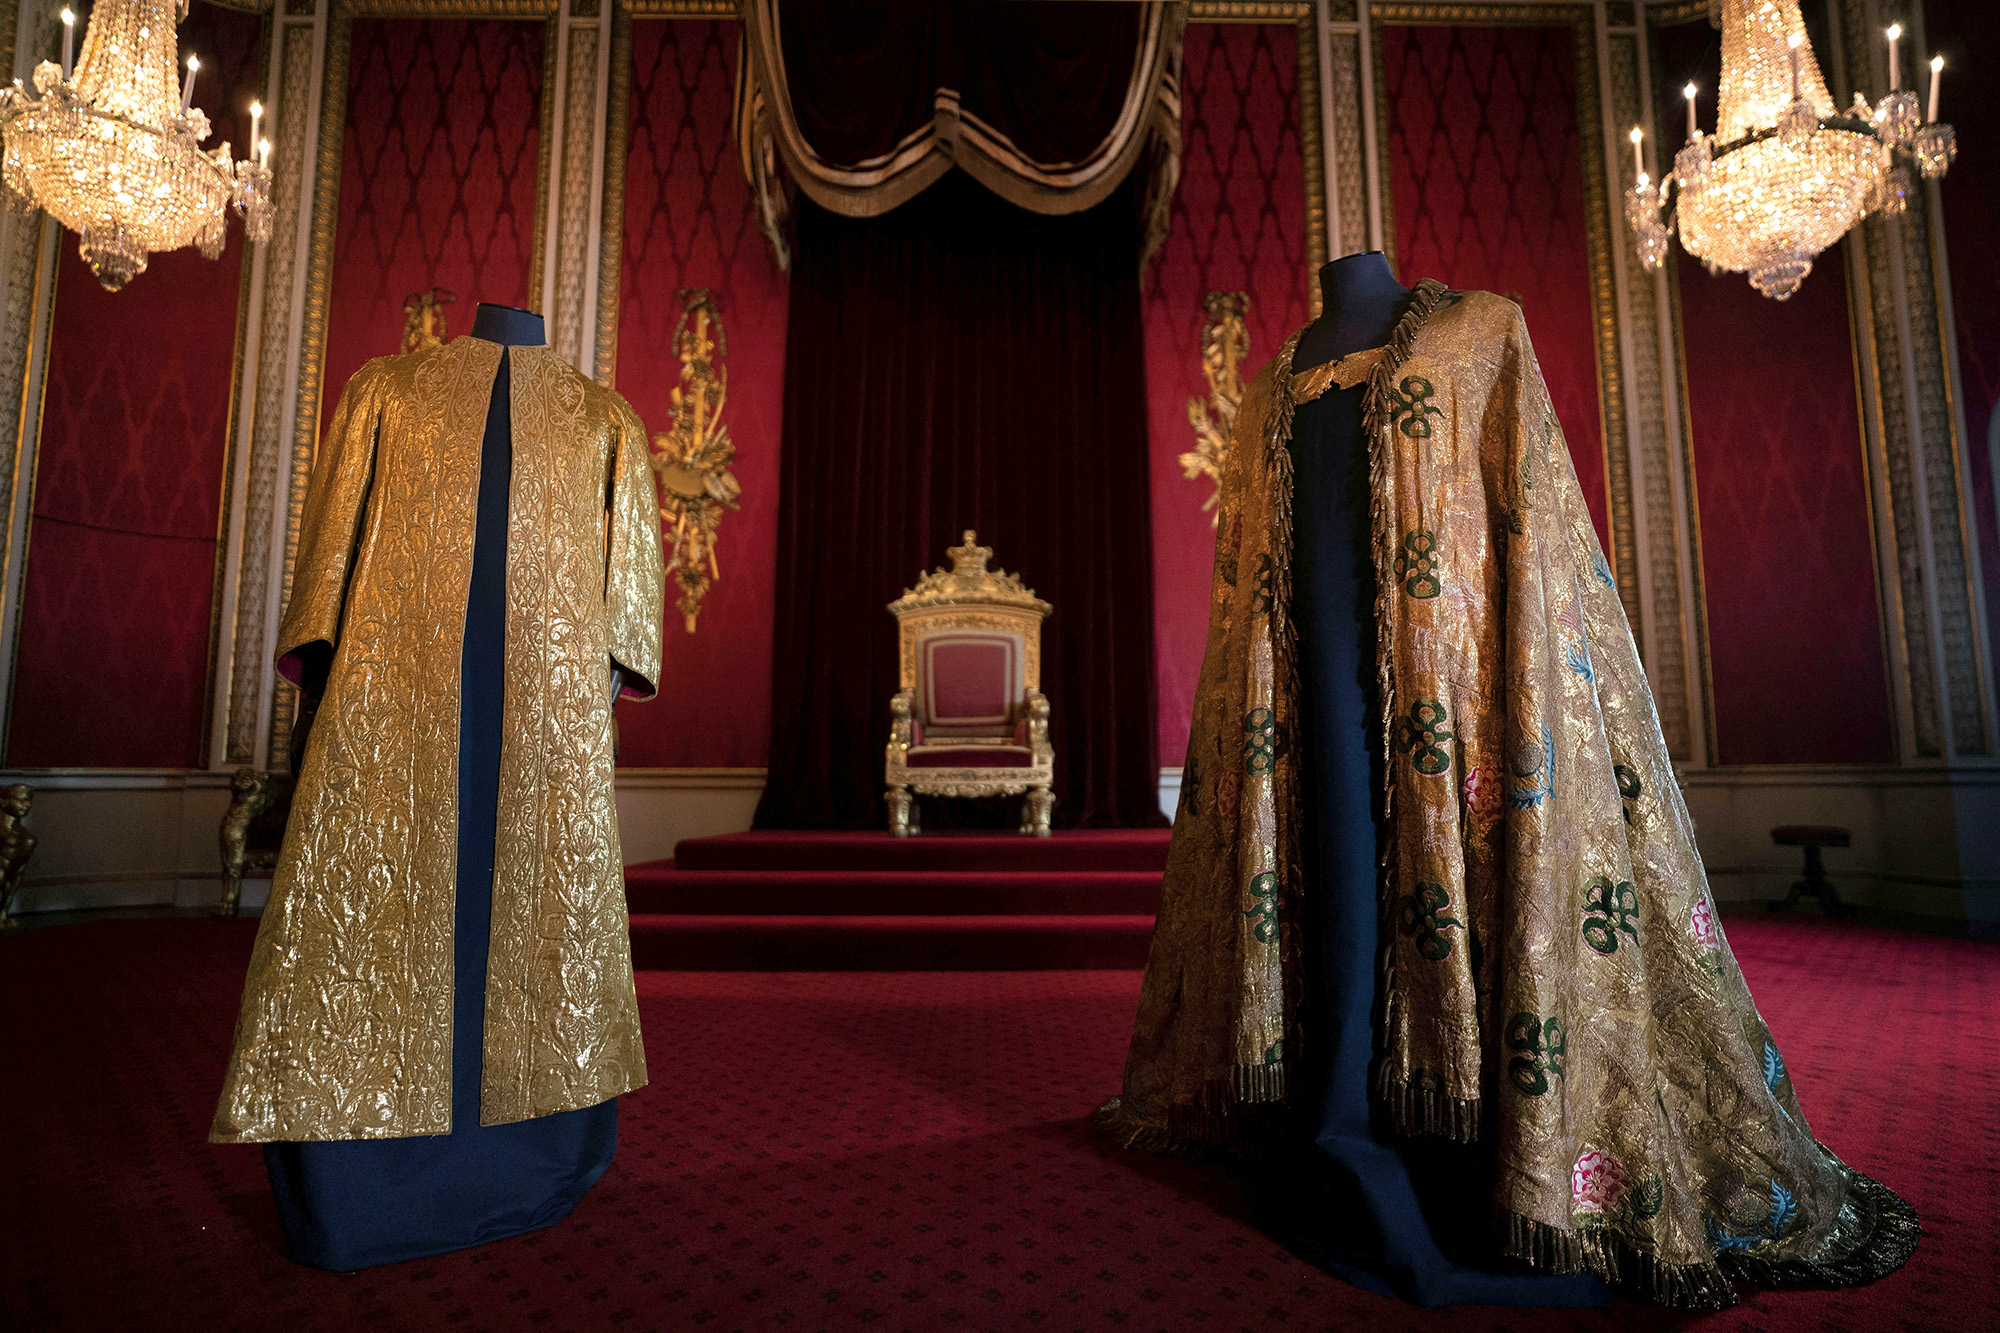 Bên ngoài Supertunica là chiếc áo choàng lớn bằng vàng có tên là Imperial Mantle, được làm cho lễ đăng quang của Vua George IV năm 1821. Đây là chiếc áo choàng cổ nhất trong bộ sưu tập đăng quang. Chiếc áo gây ấn tượng với các chi tiết phức tạp, bao gồm biểu tượng vương miện, họa tiết tán lá, hoa bách hợp, cỏ ba lá, hoa hồng và chiếc khóa áo hình đại bàng…